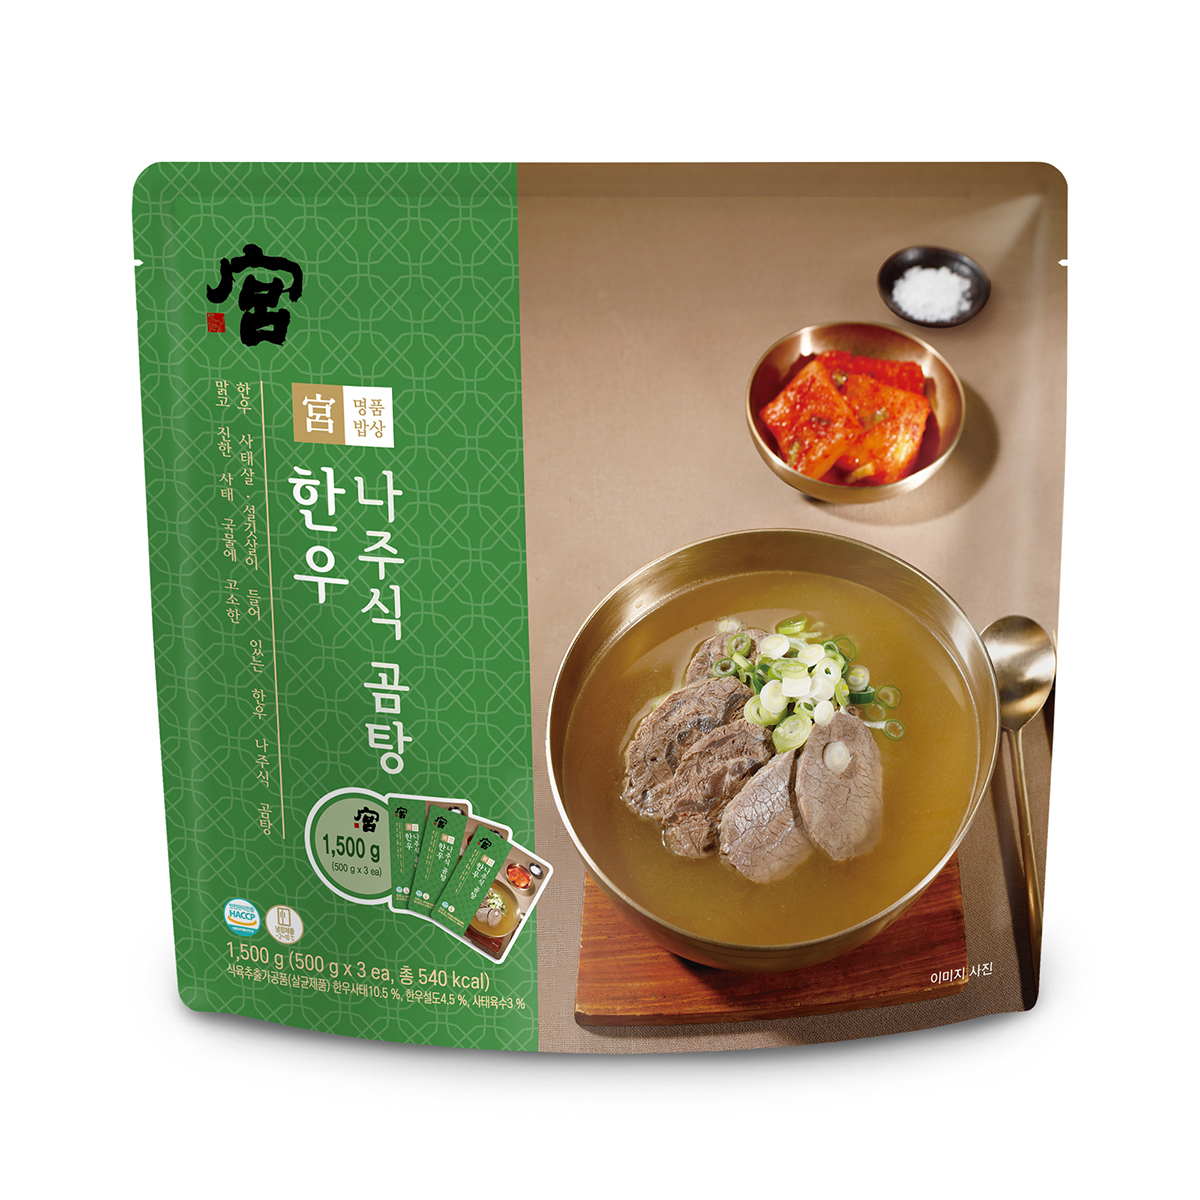 韓國食品-[宮] 韓牛羅州式牛骨湯 500g